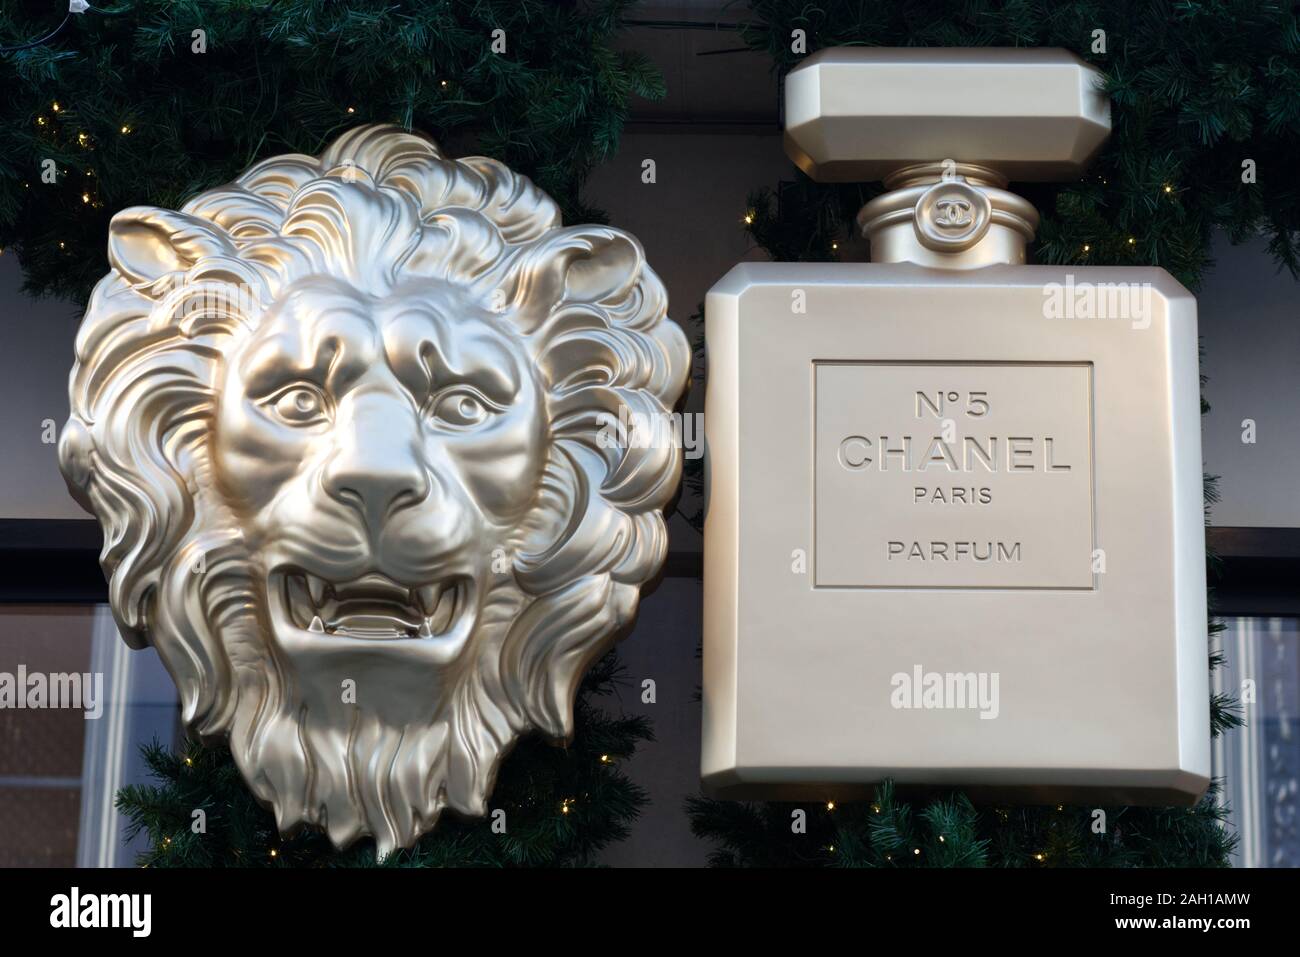 Frasco de perfume Chanel lion y decoraciones de Navidad Fotografía de stock  - Alamy